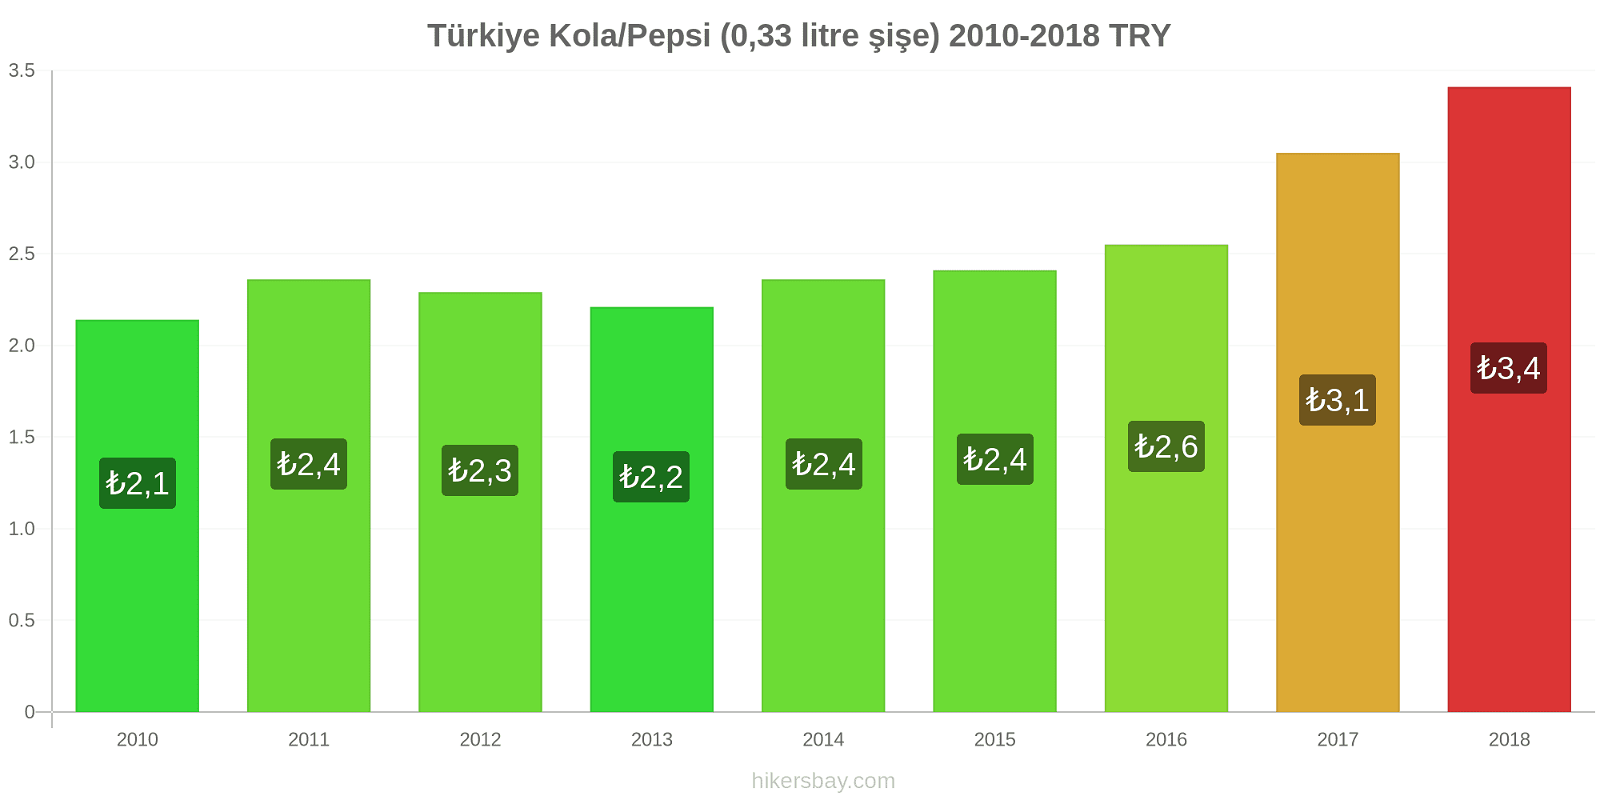 Türkiye fiyat değişiklikleri Kola/Pepsi (0.33 litre şişe) hikersbay.com